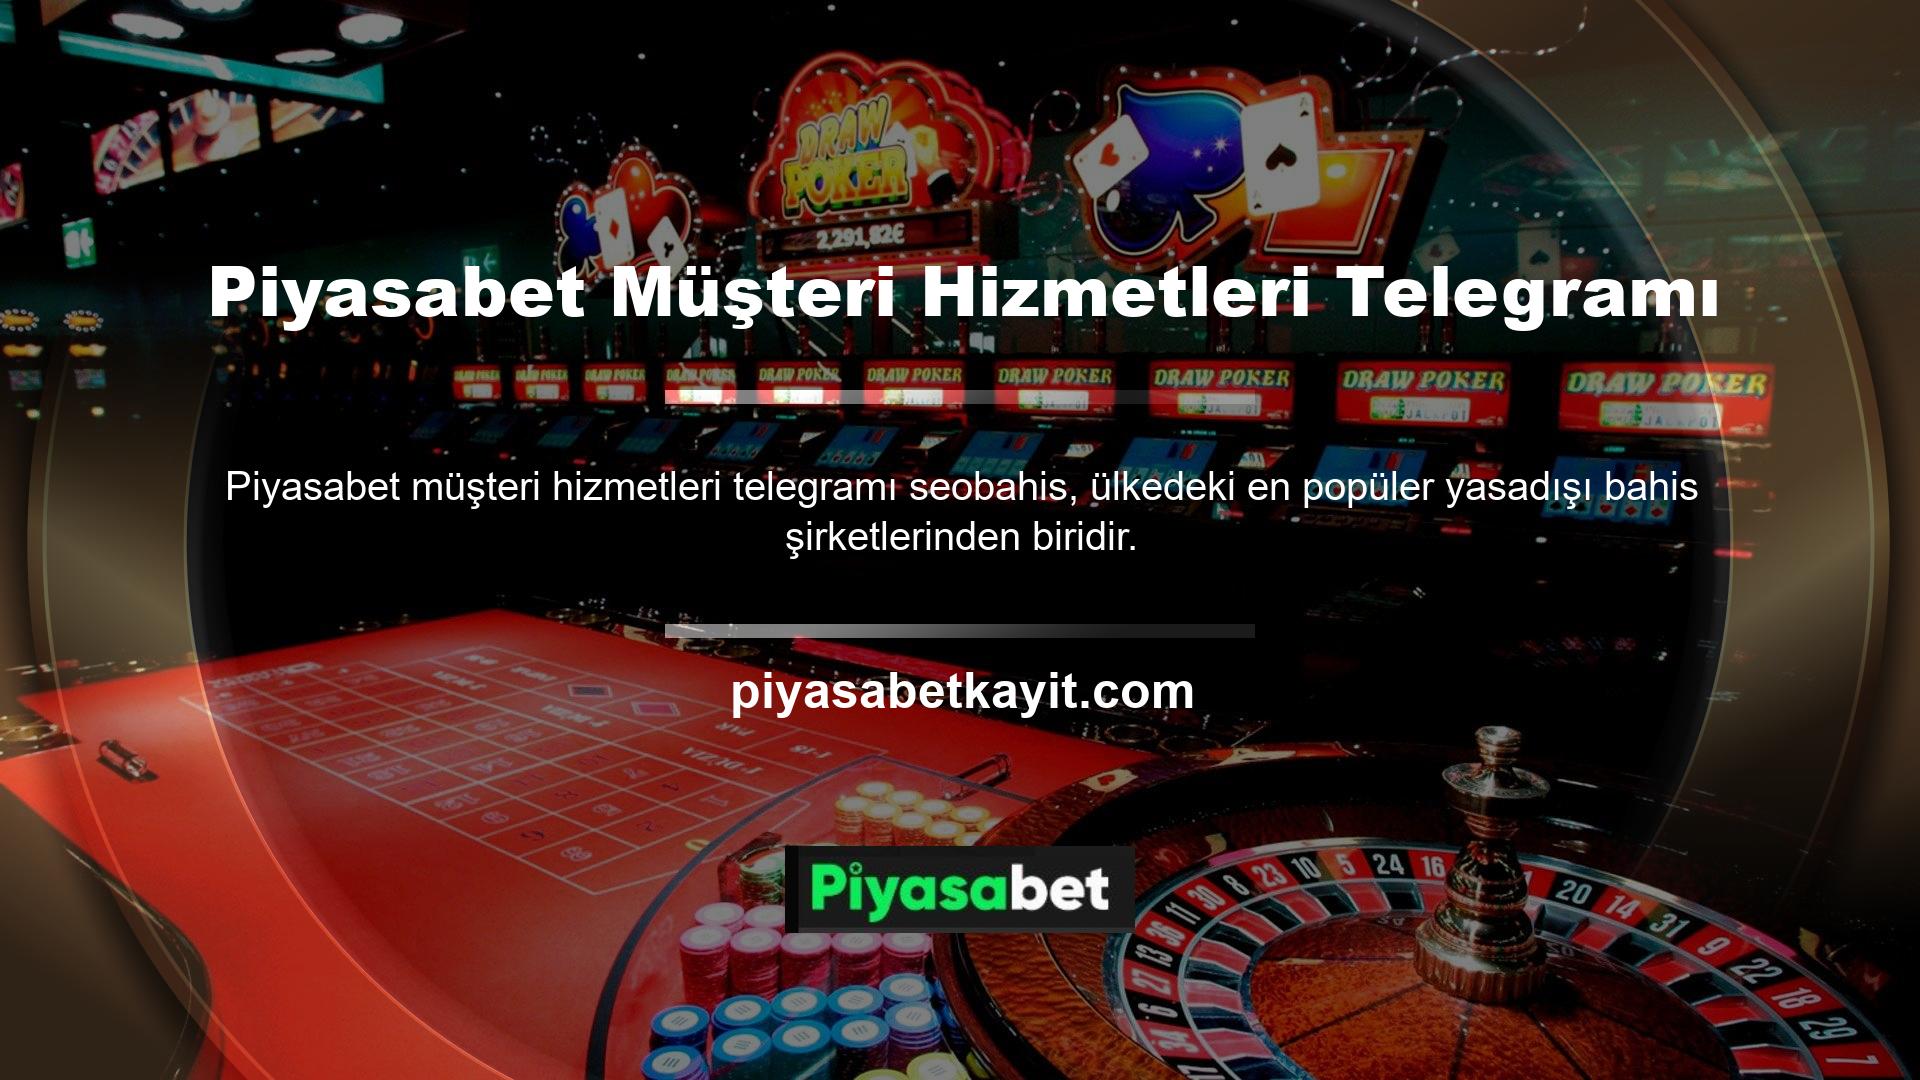 Piyasabet, tüm Türk rulet oyunlarını yöneten, casino oyuncuları tarafından sevilen ve saygı duyulan bahis şirketlerinden biridir